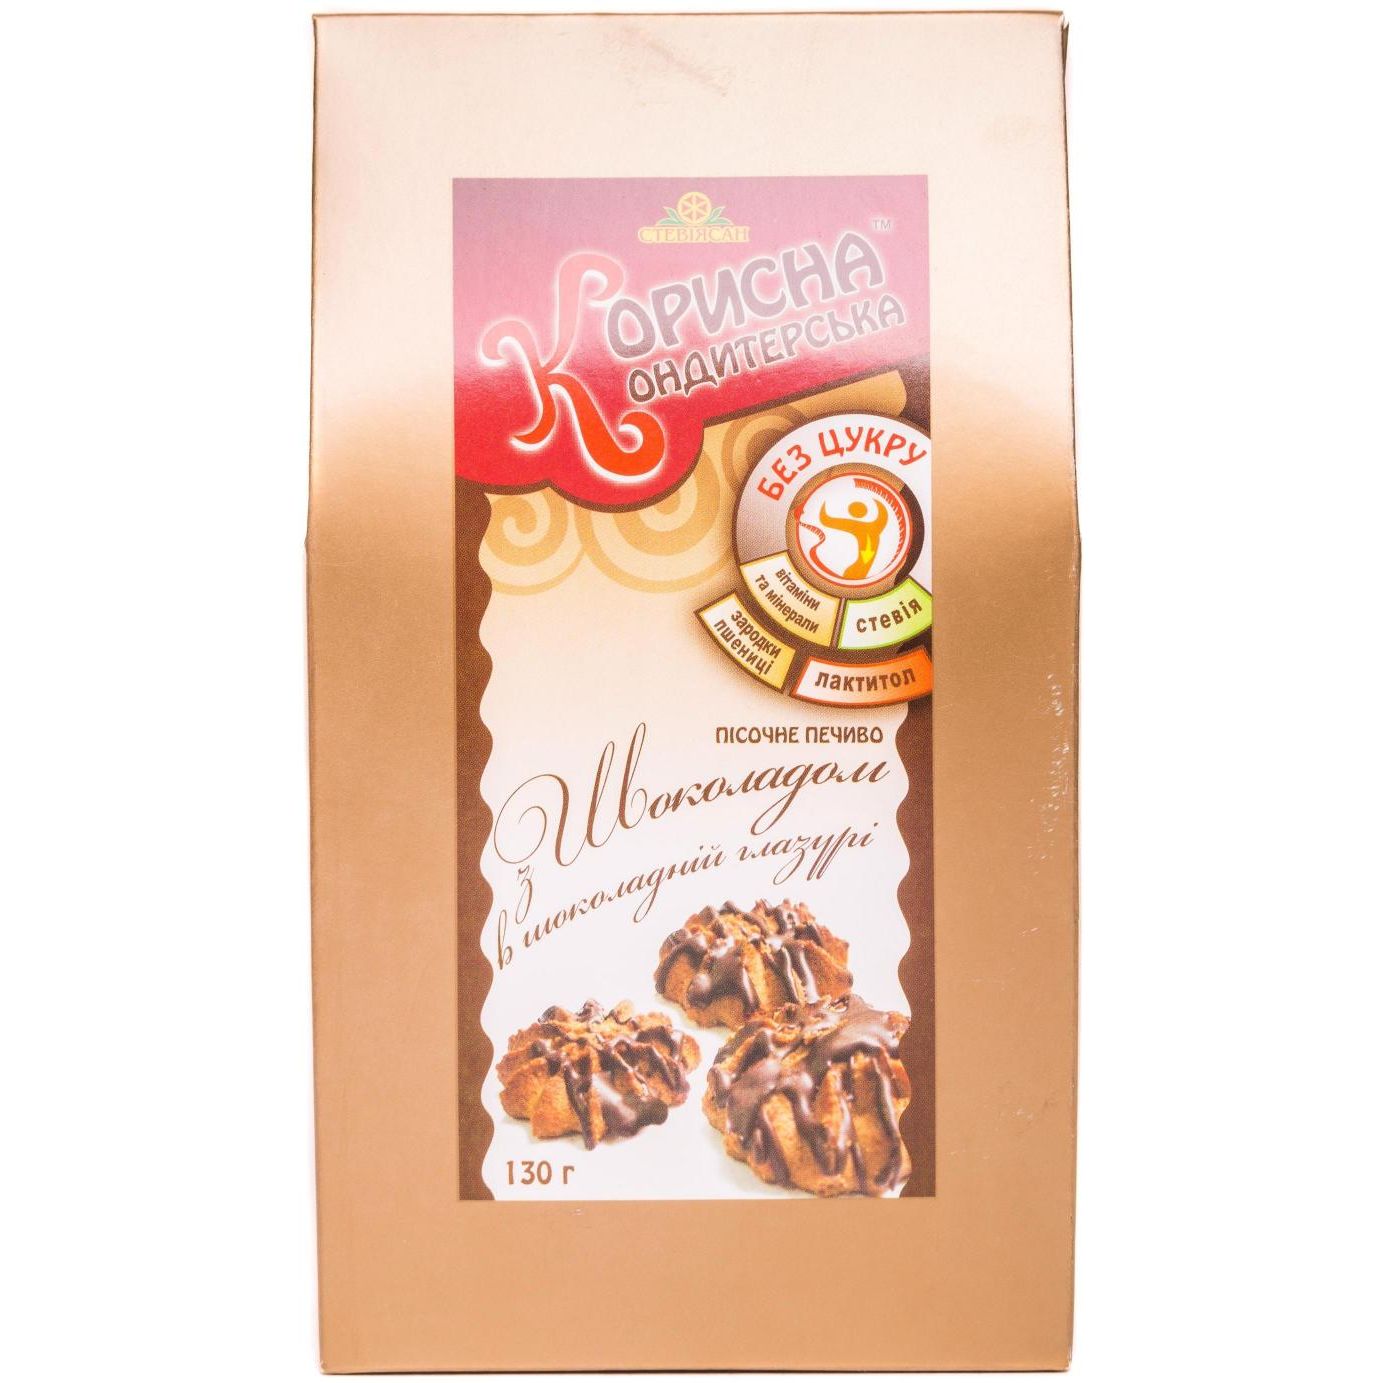 Пісочне печиво Корисна кондитерська з шоколадом в шоколадній глазурі без цукру 130 г (388909) - фото 1